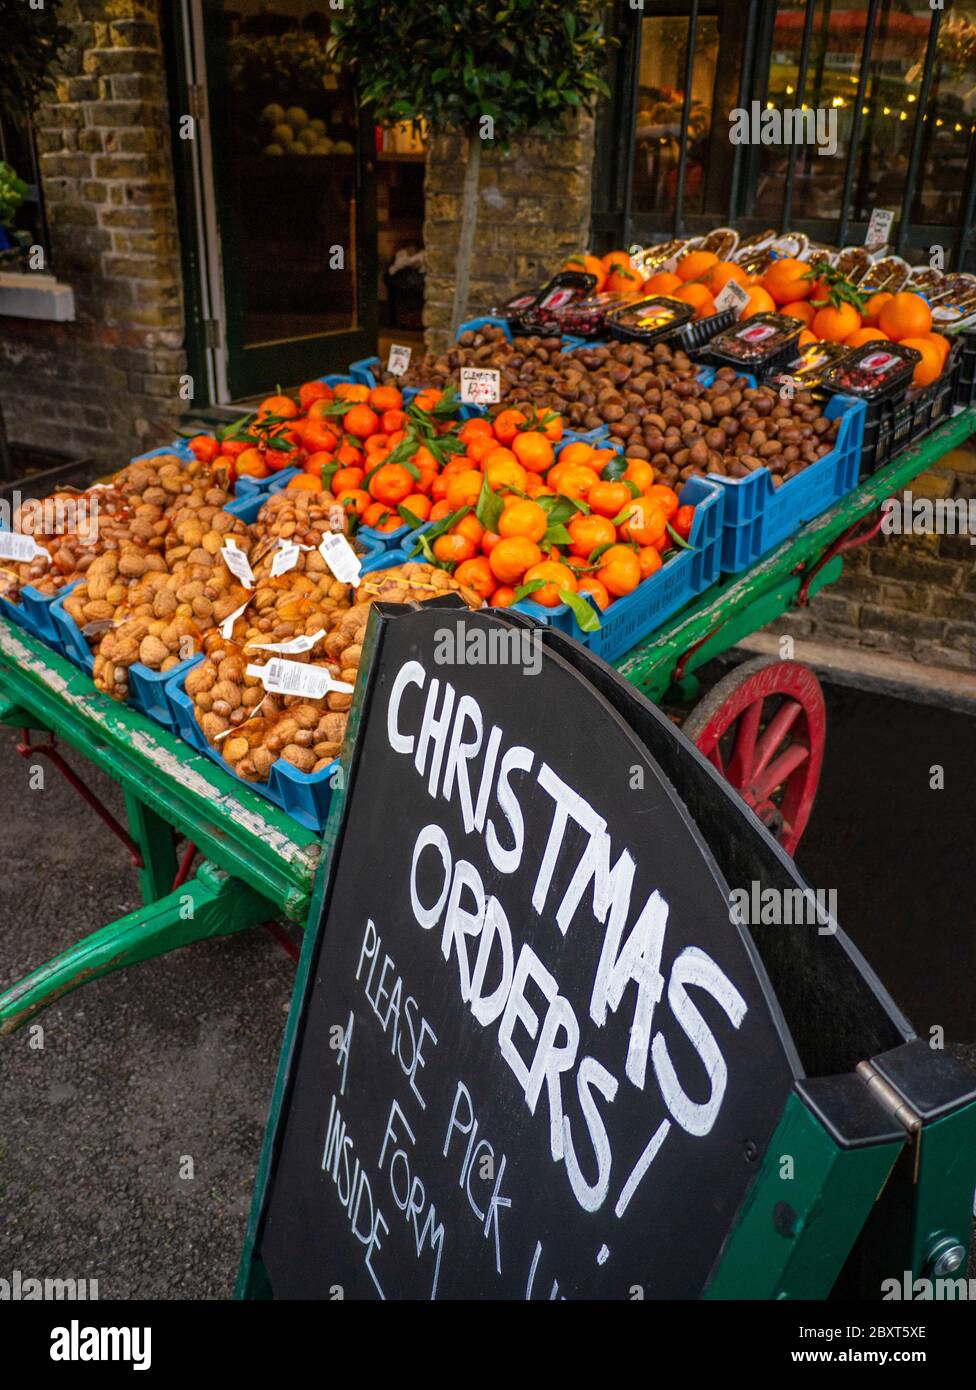 BOROUGH MARKET TRADITIONELLE HÄNDLER BARROW Auswahl an frischem Gemüse und Obst zum Verkauf, mit Tafel Werbung Weihnachtsaufträge im Borough Market Southwark London UK Stockfoto